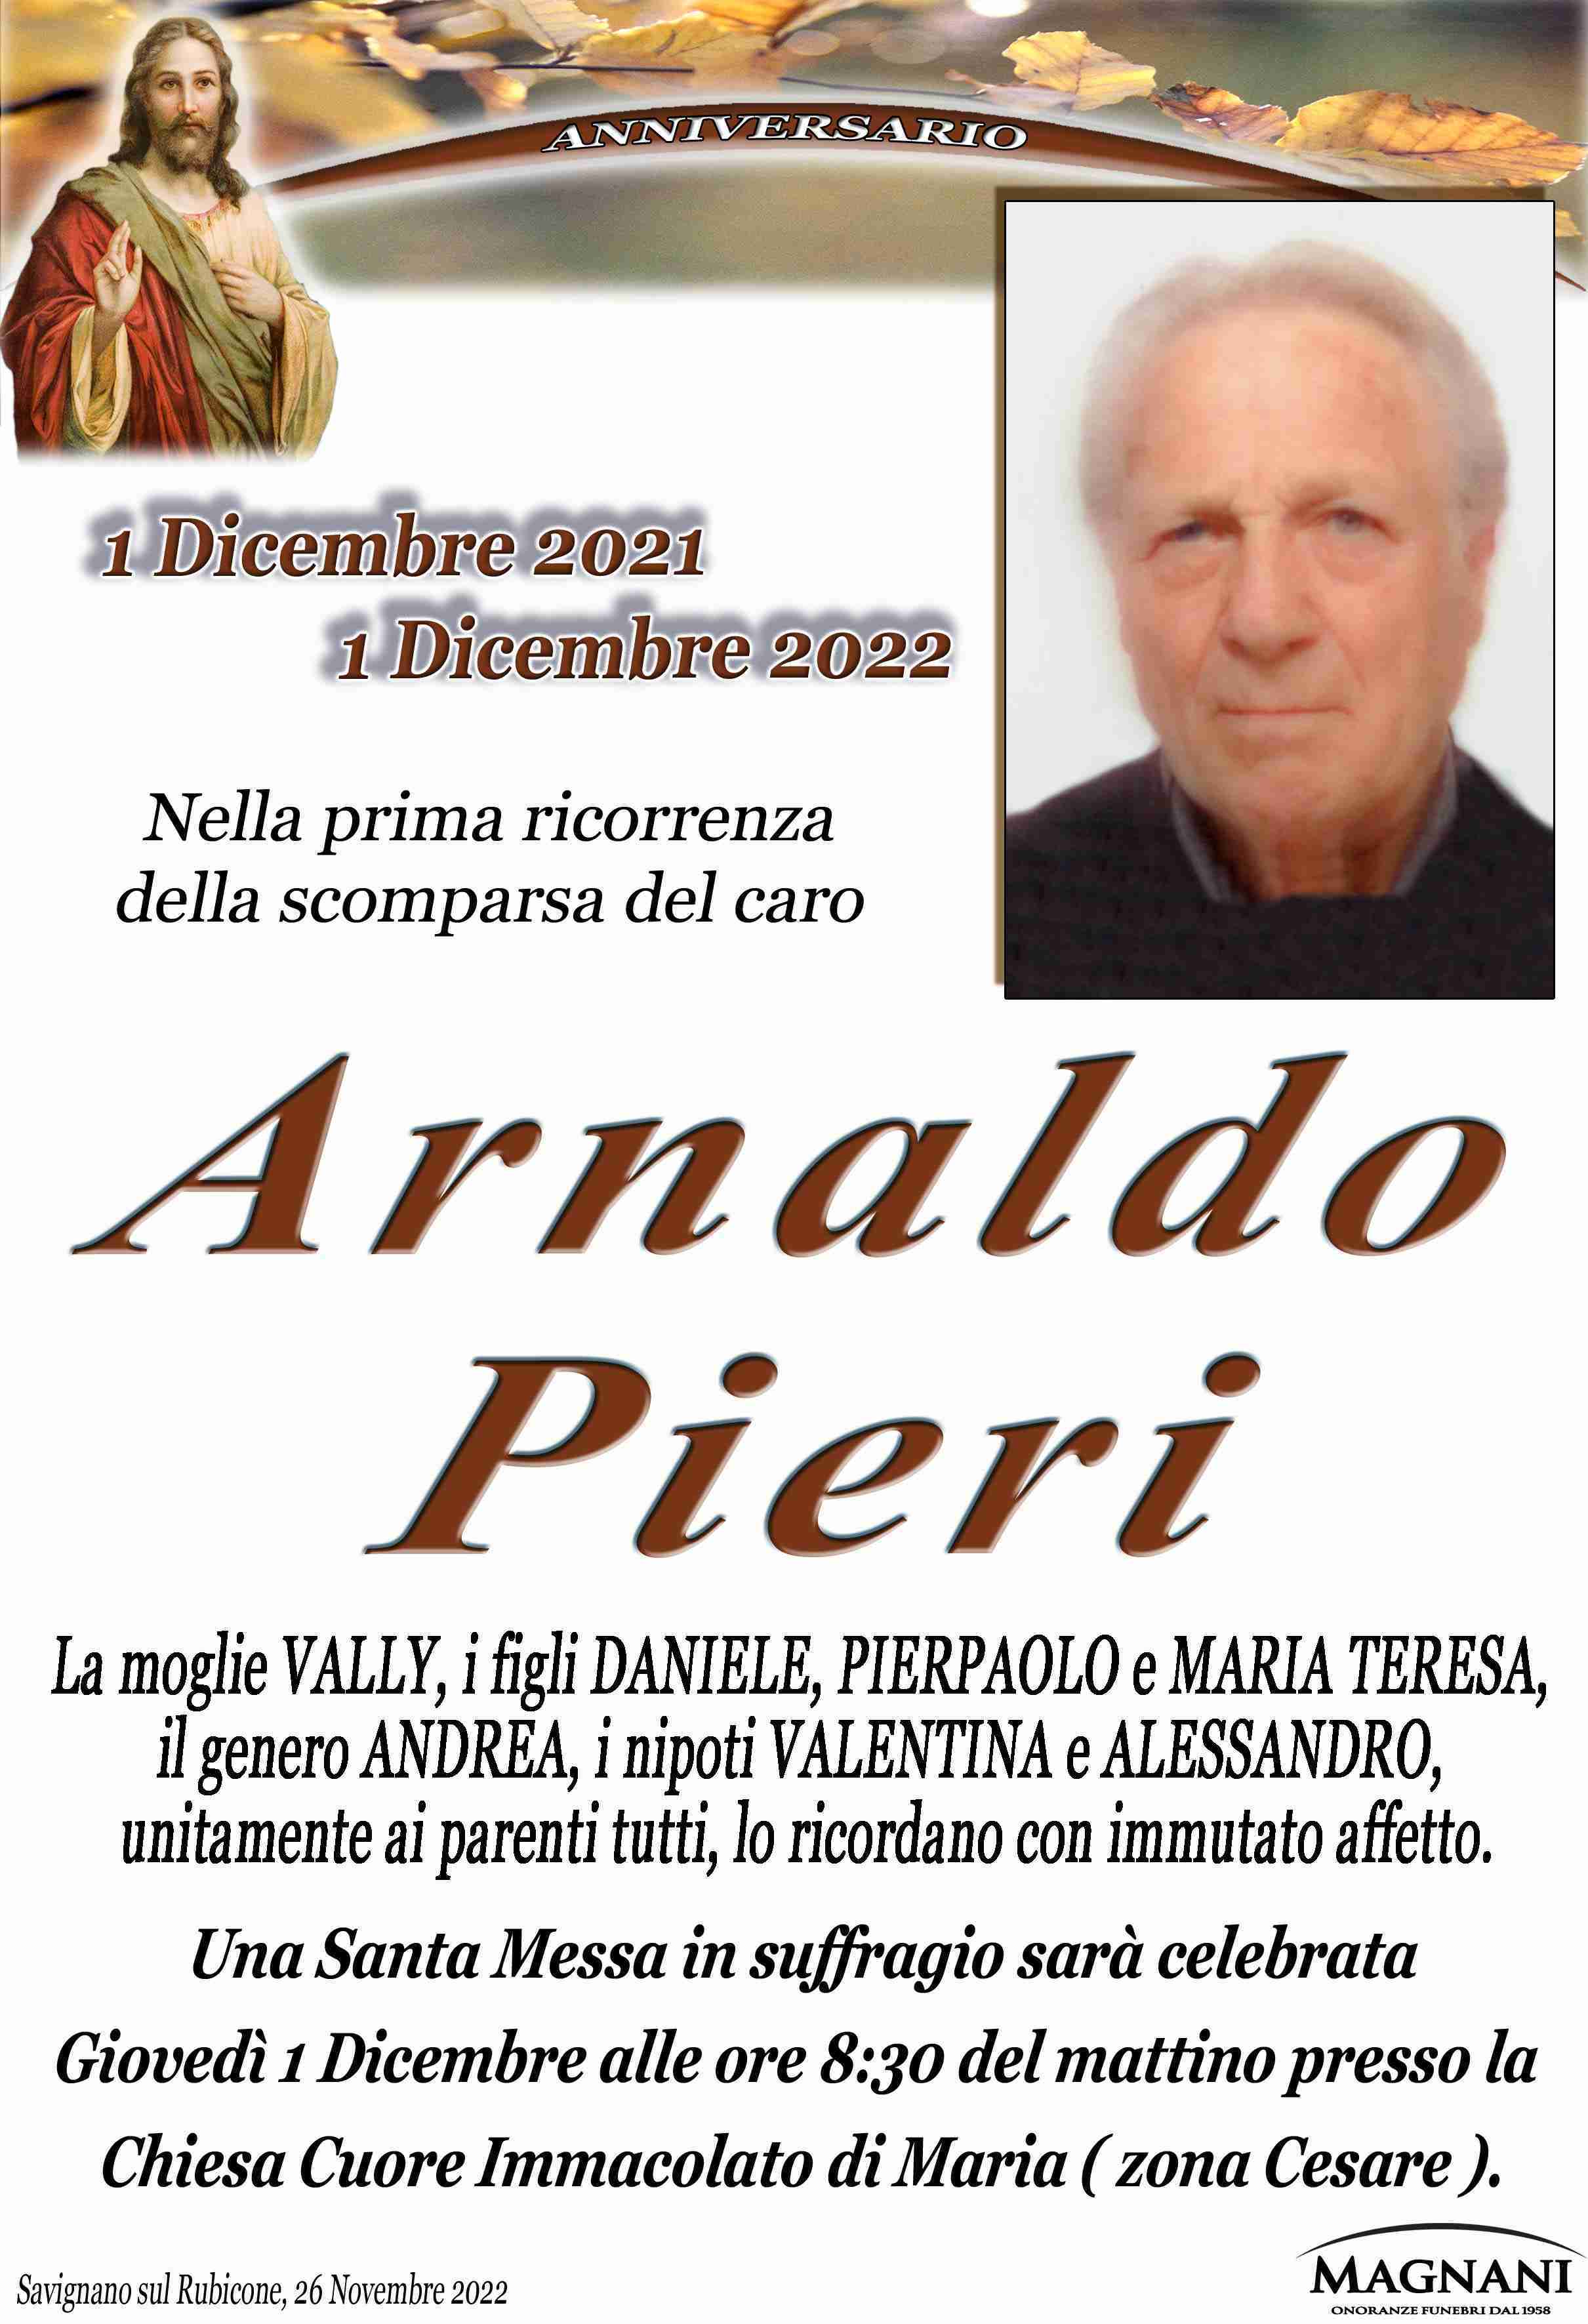 Arnaldo Pieri